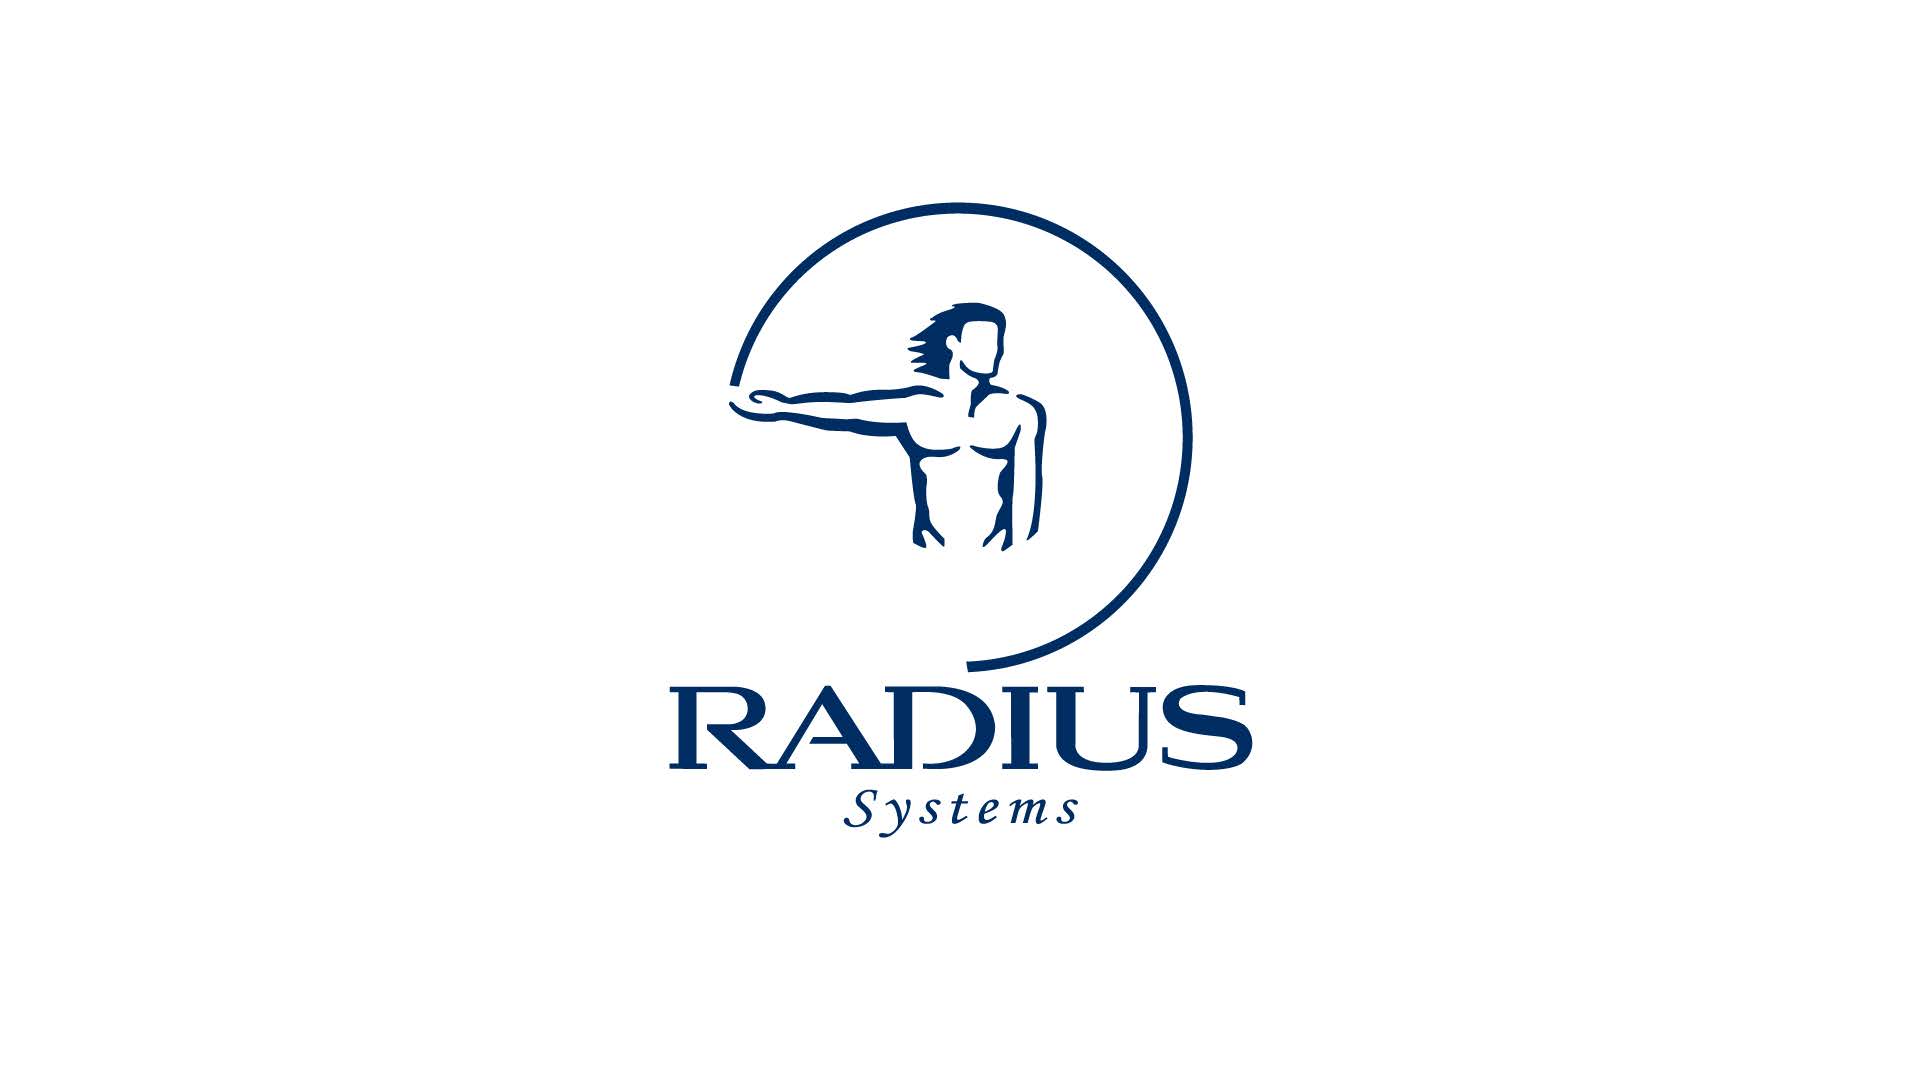 Radius Plastics ltd.